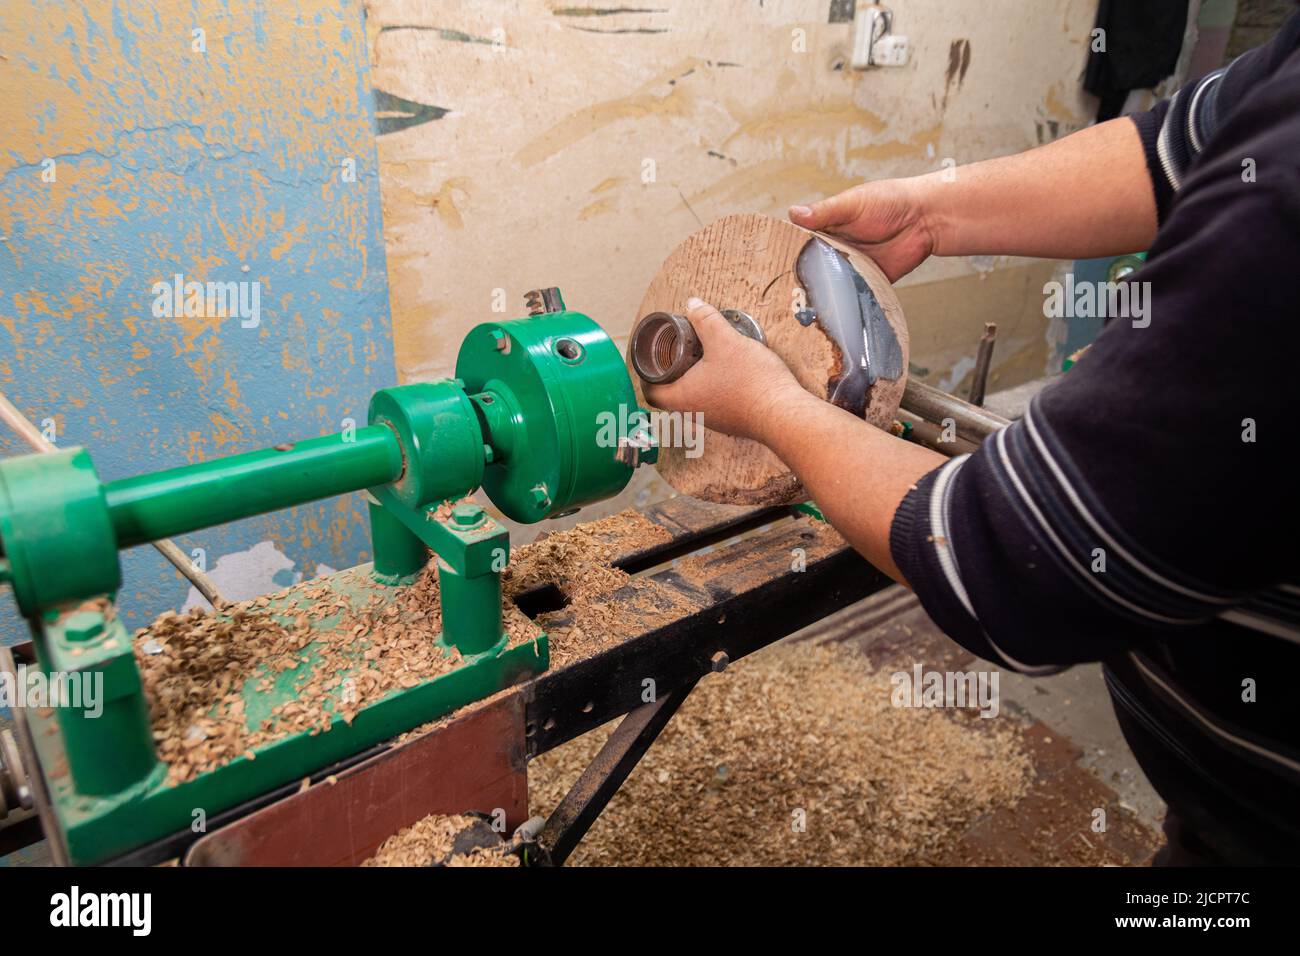 Zimmermann bereitet Maschine für das Drehen von Holz auf einer